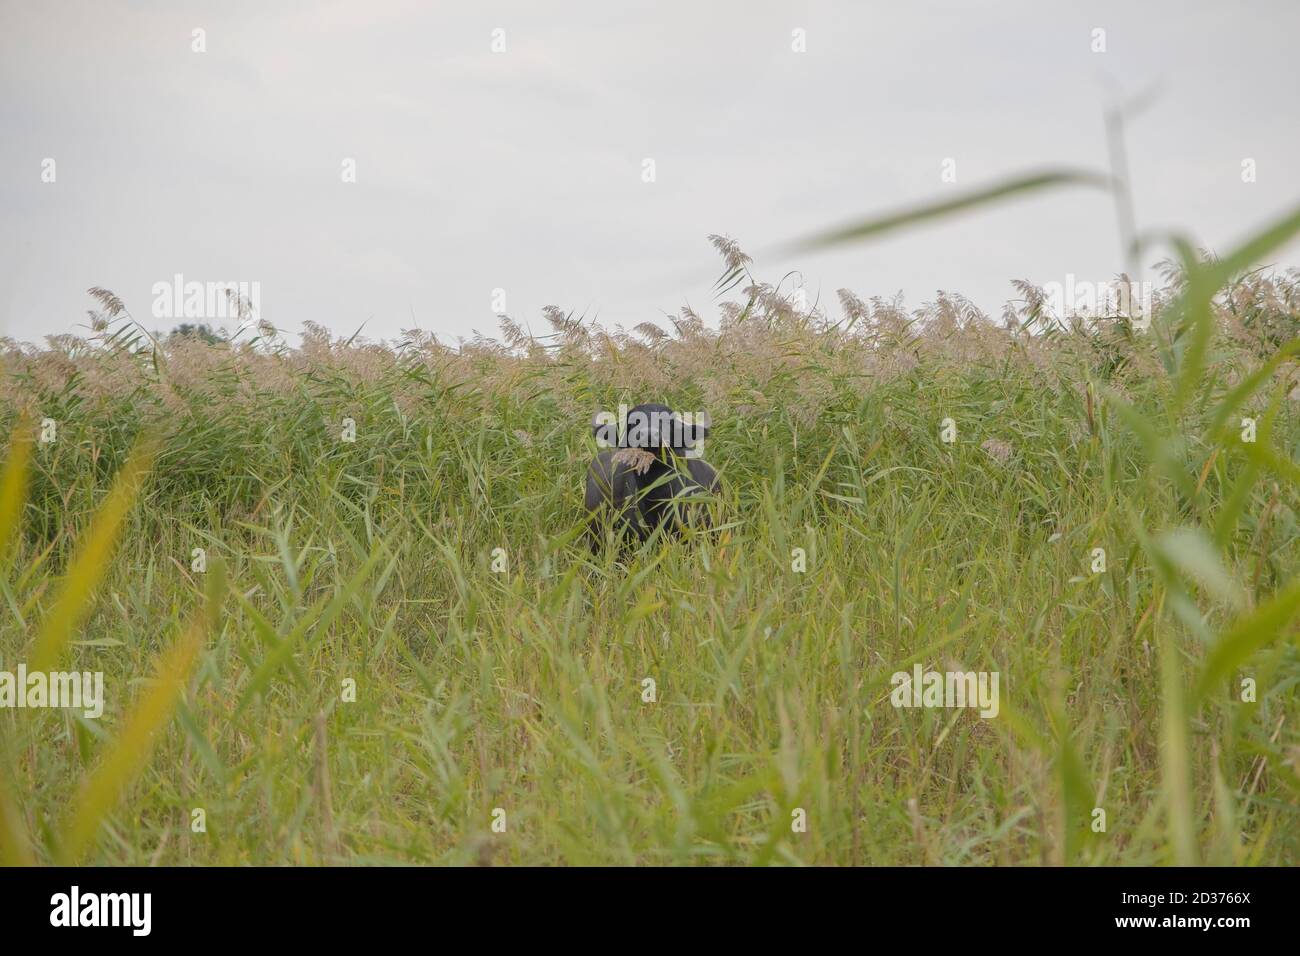 Acqua bufalo pascolo nelle canne. Orlovka villaggio, reni raion, Odessa oblast, Ucraina, Europa dell'Est Foto Stock